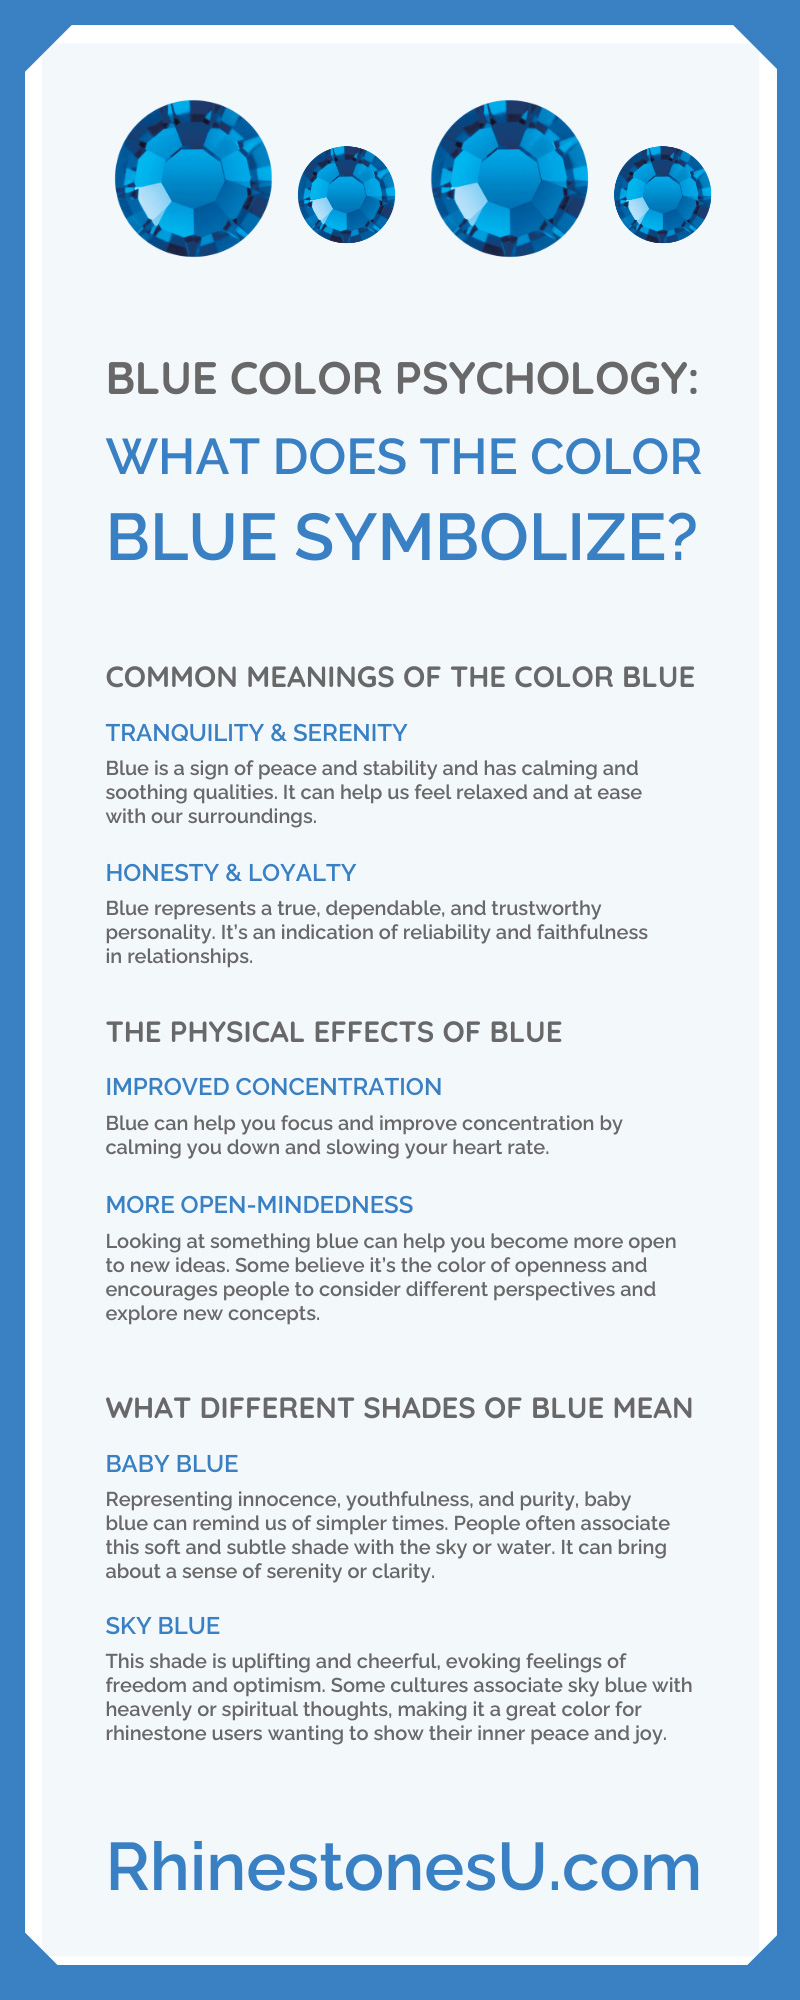 Blue Color Psychology: What Does the Color Blue Symbolize?